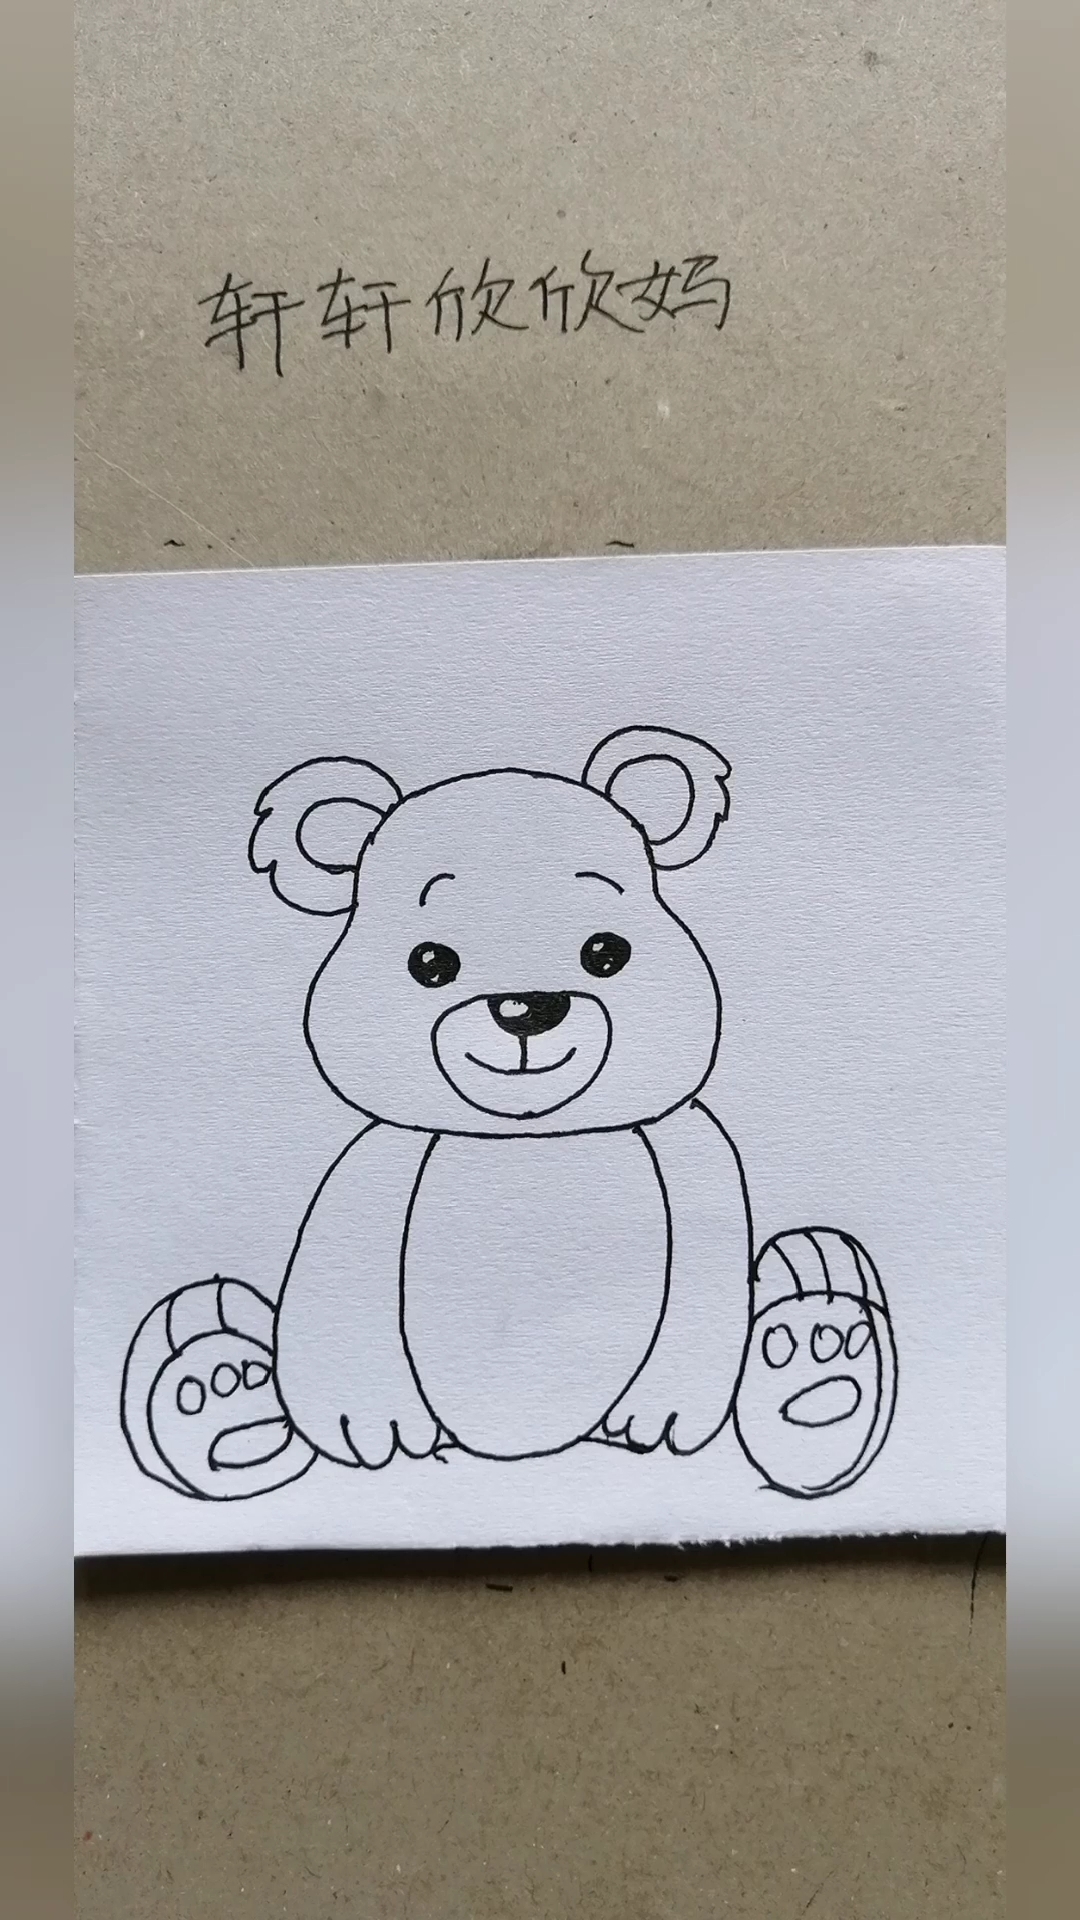 坐着的熊简笔画图片